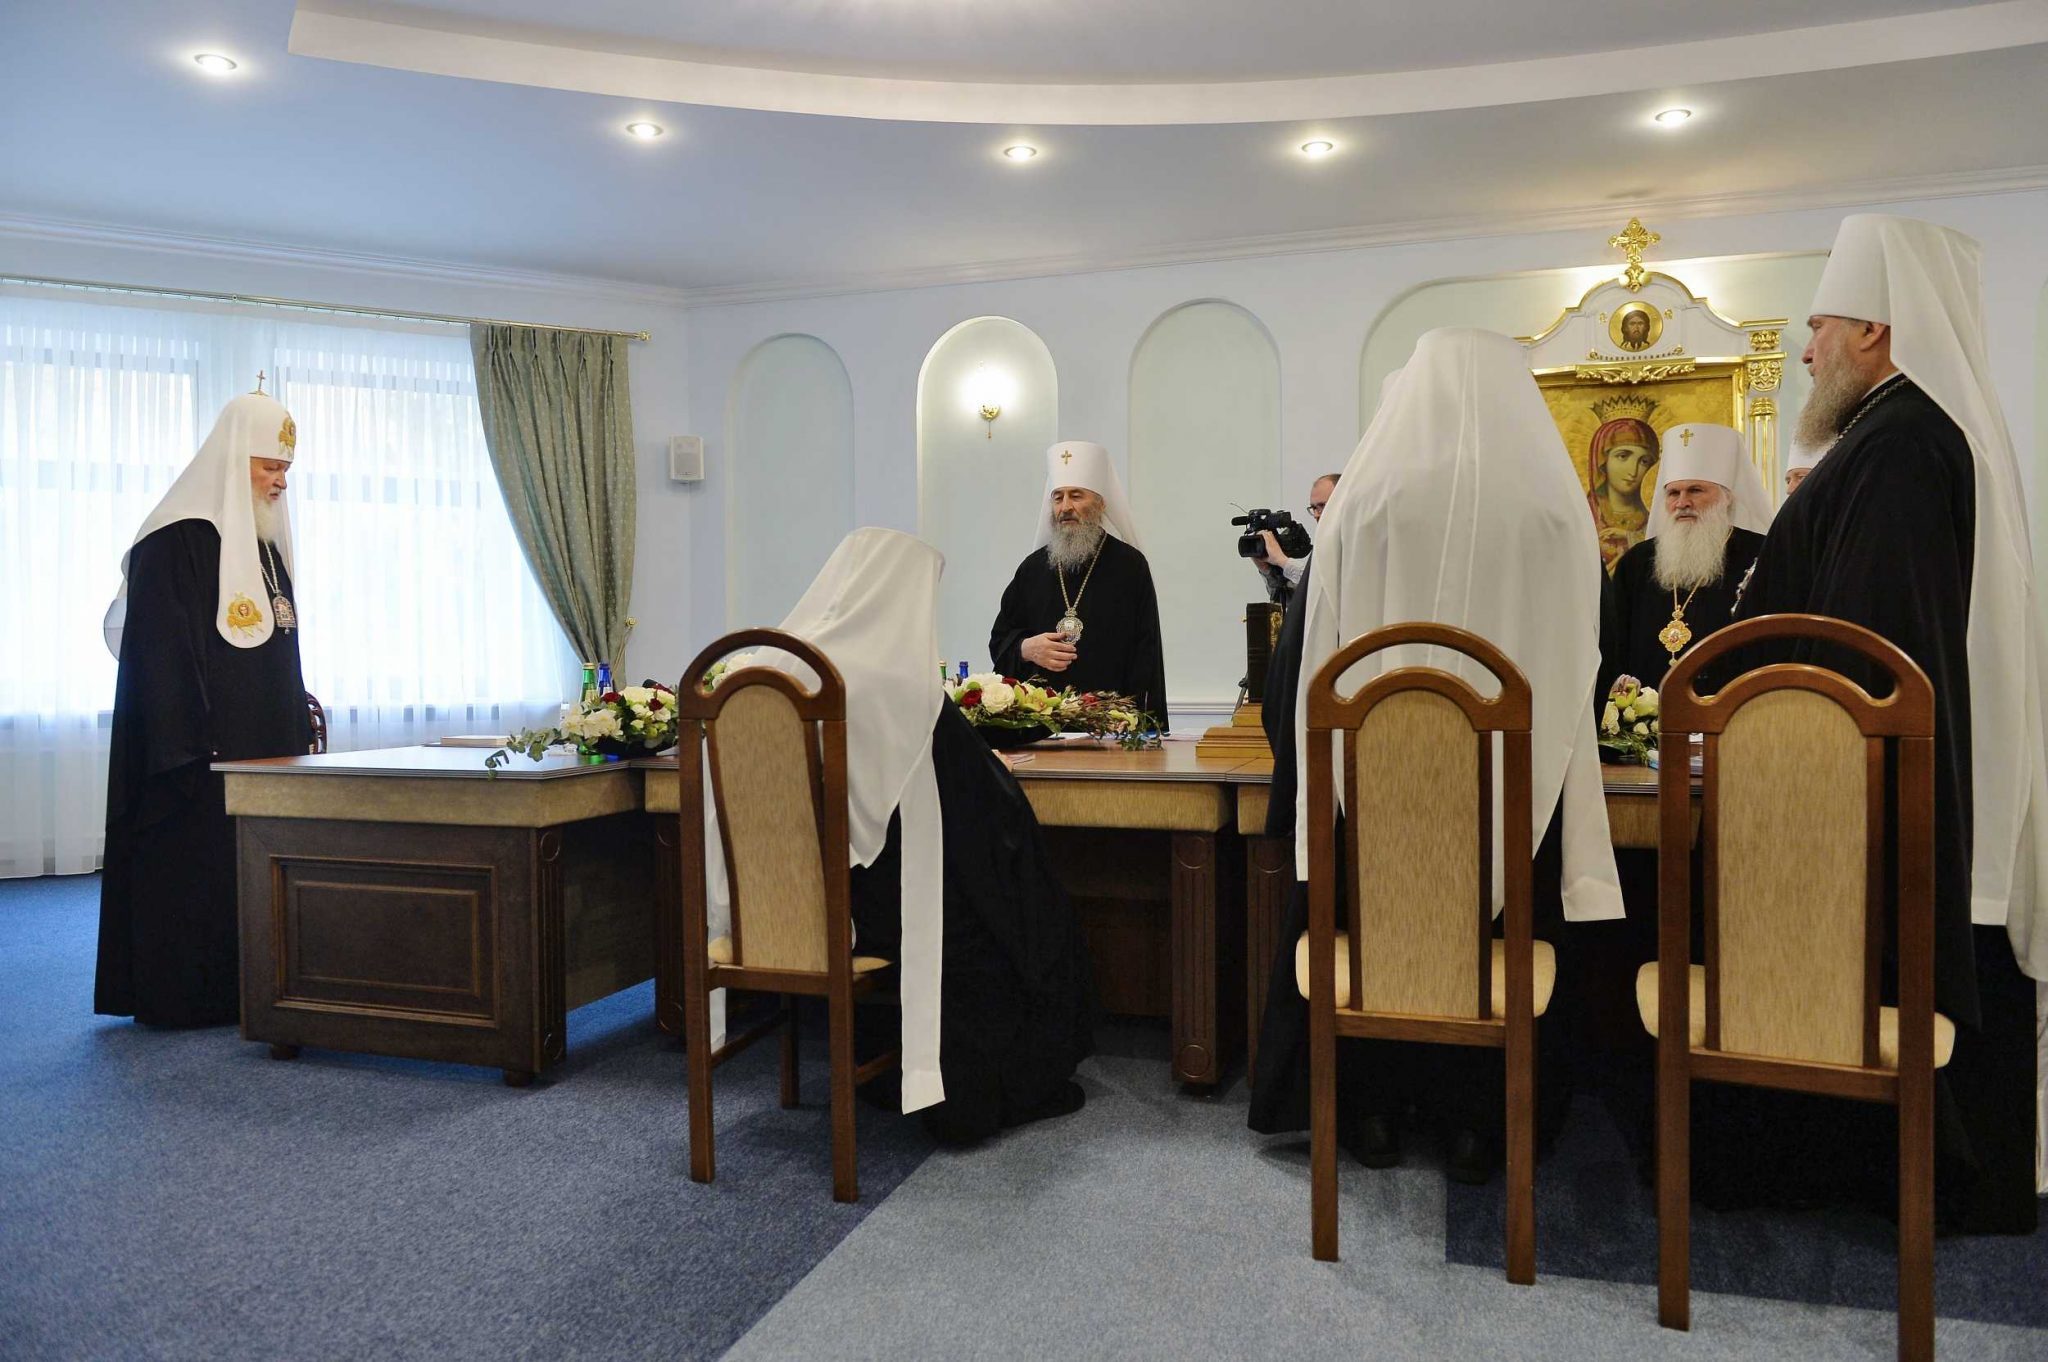 Déclaration du Saint-Synode de l’Église orthodoxe russe à la suite des empiétements du Patriarcat de Constantinople sur le territoire canonique de l’Église russe